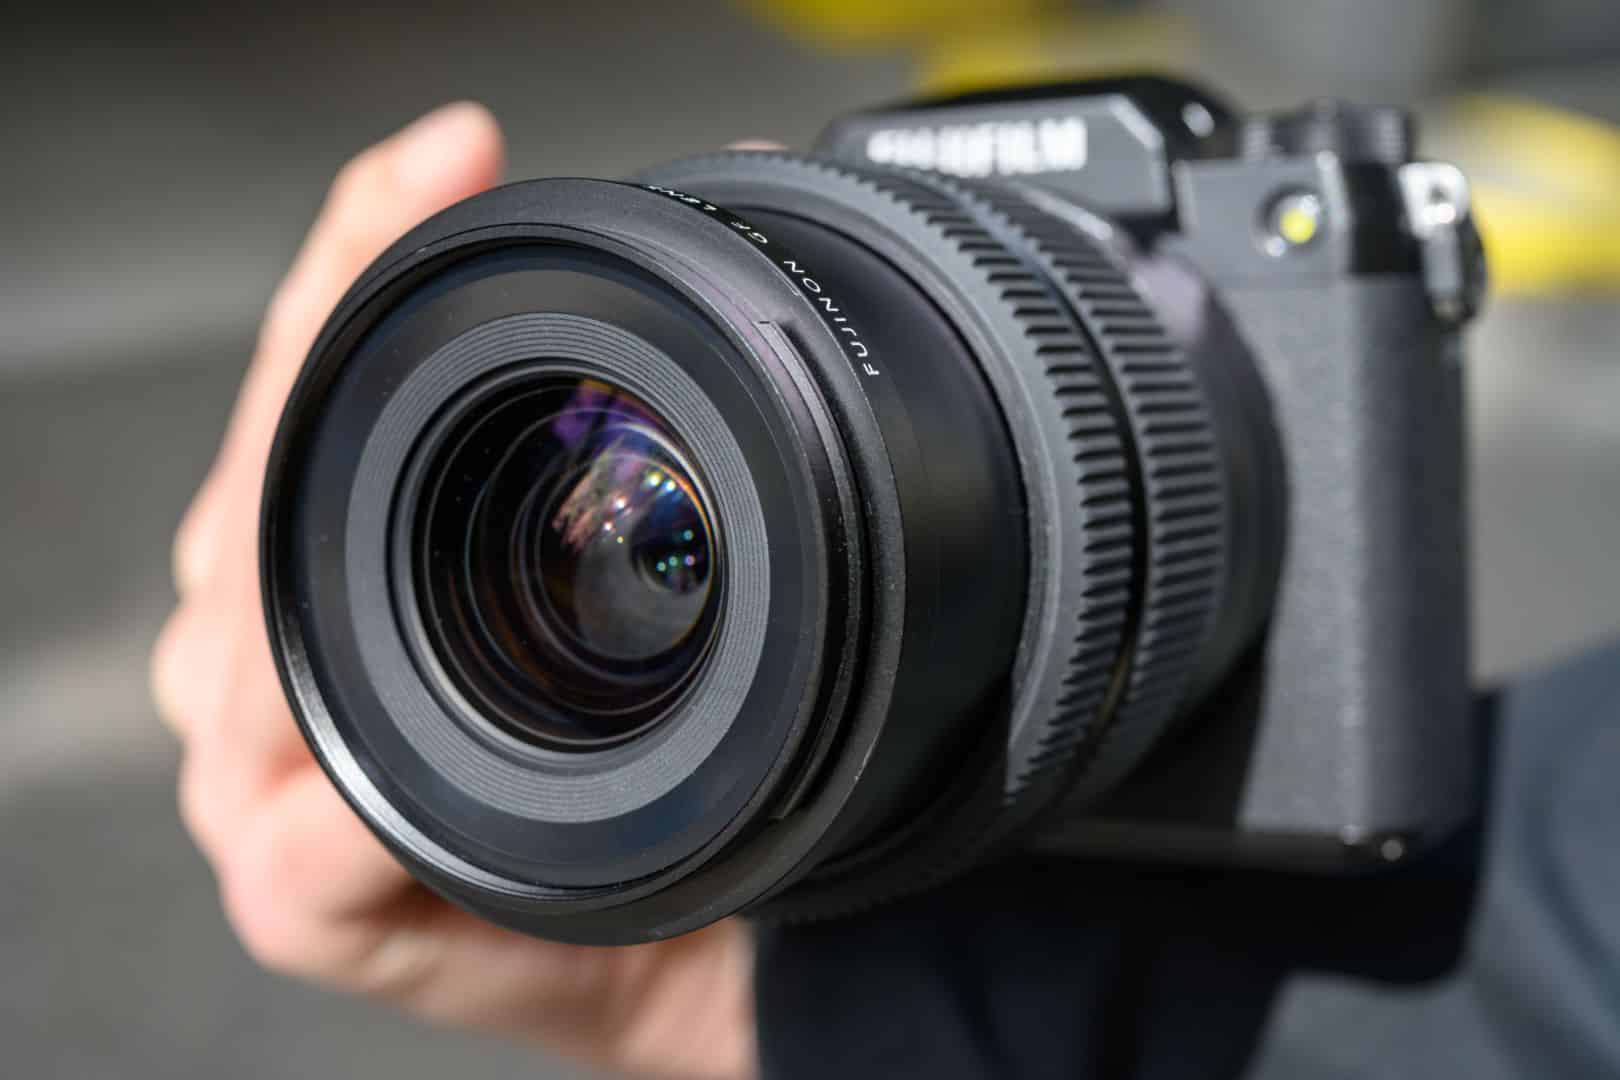 Ống kính Fujifilm GF 35-70mm F4.5-5.6 WR